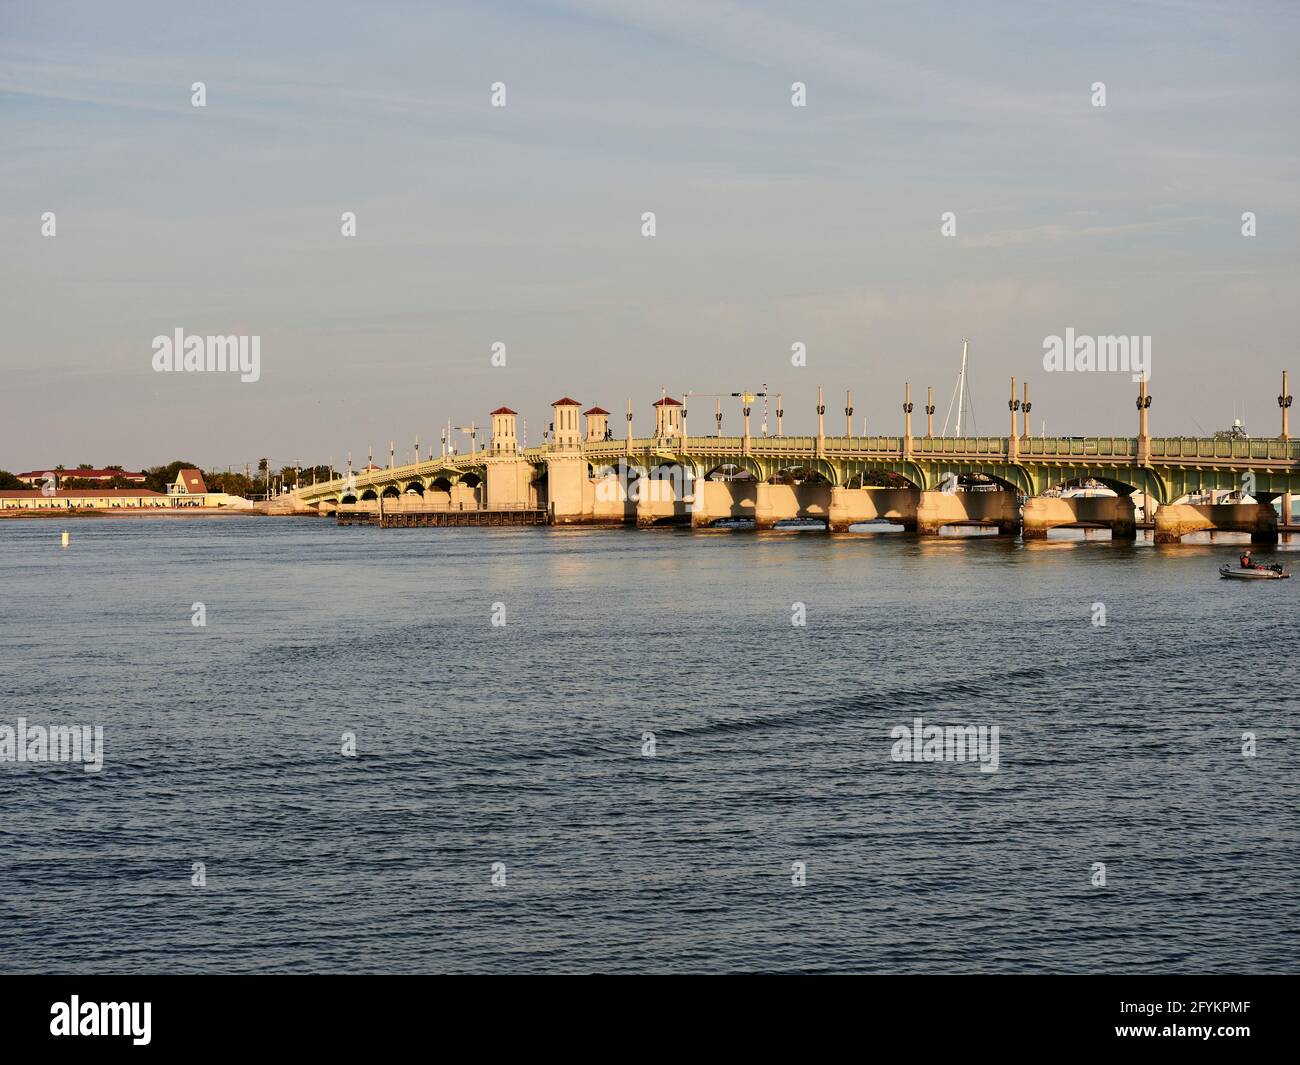 Die Bridge of Lions oder Lions Bridge ist eine zweiblättrige Bascule-Brücke, die den Intracoastal Waterway, Matanzas Bay, St. Augustine, Florida, USA, überspannt. Stockfoto